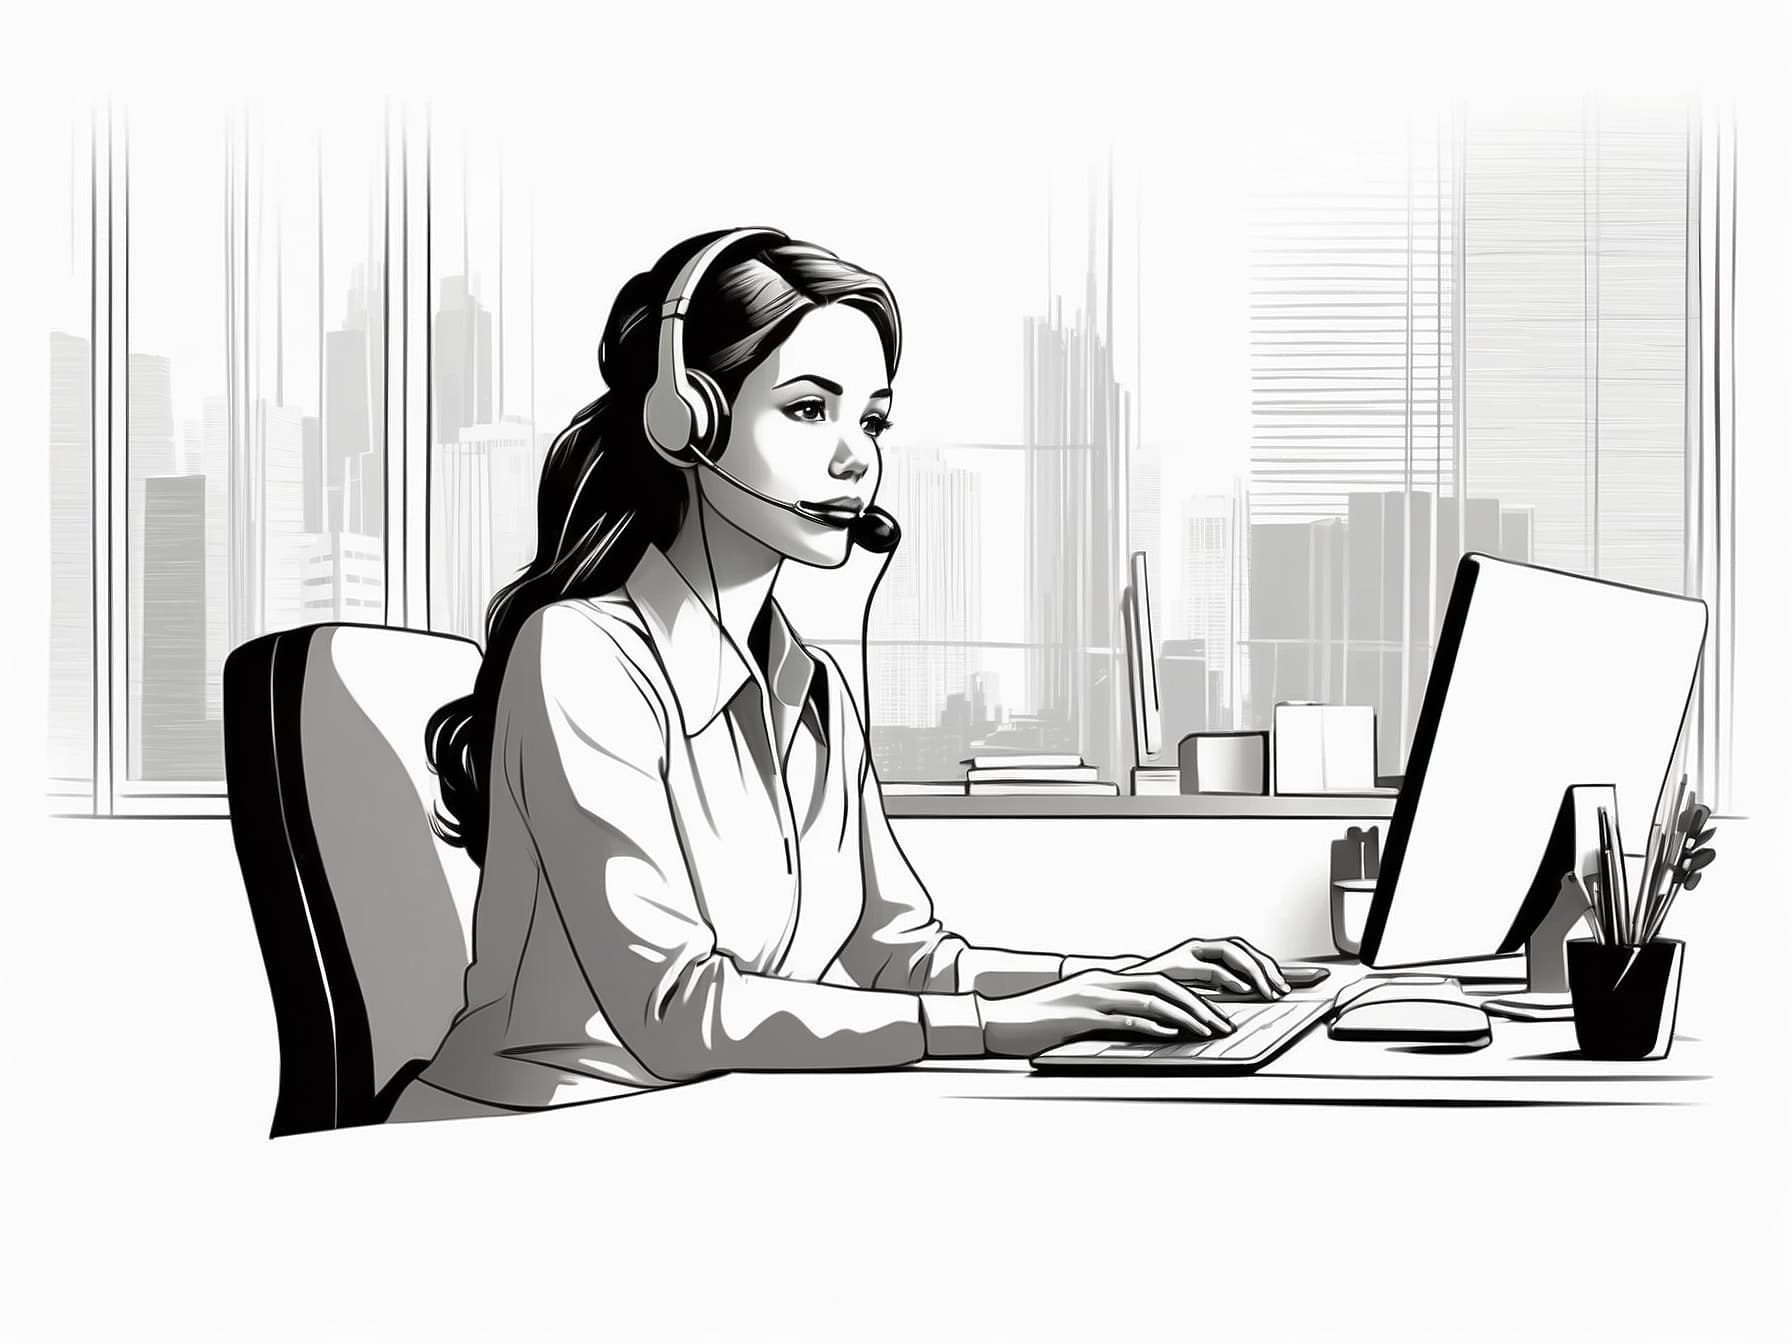 Eine Call-Center-Mitarbeiterin als Darstellung zum Thema "Chatbot"